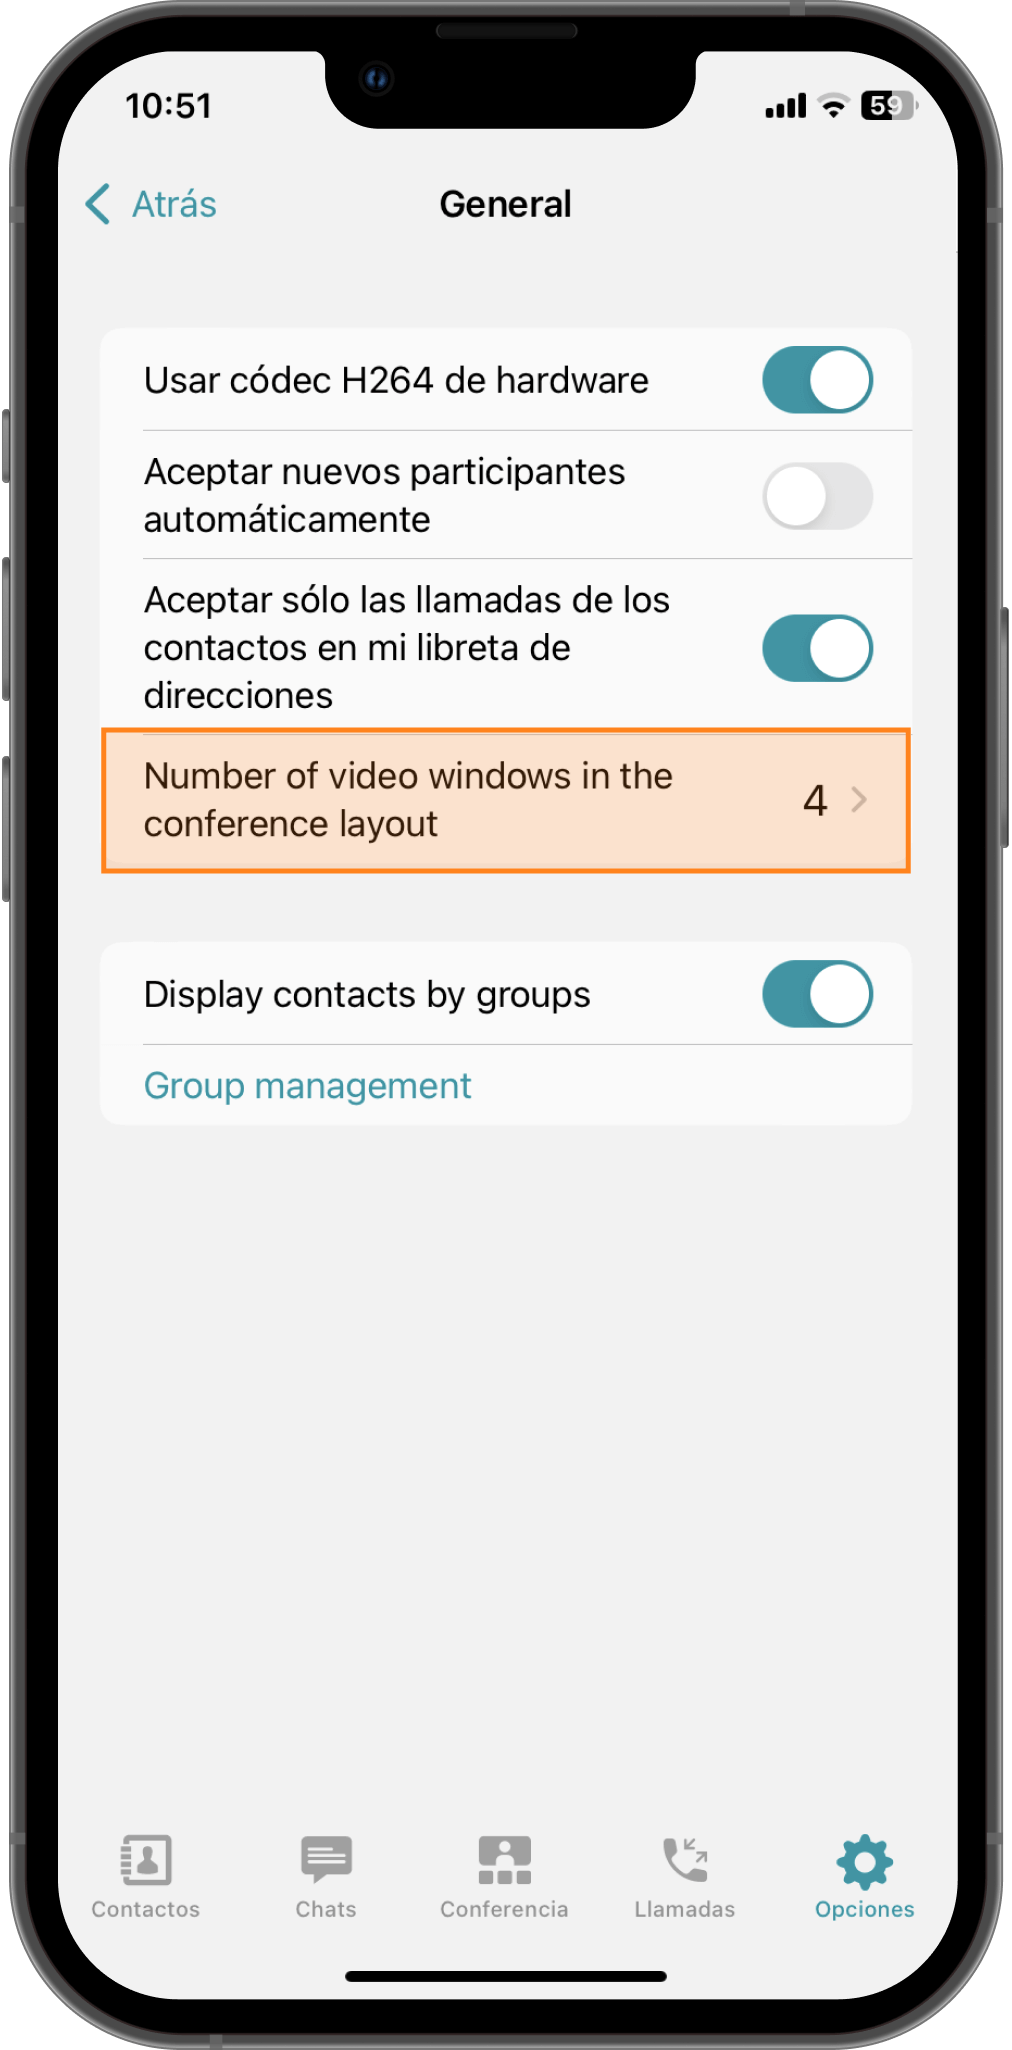 TrueConf 3.4.3 para iOS: Fácil inicio del marcador, indicador de micrófono deshabilitado y menú de opciones actualizado 7